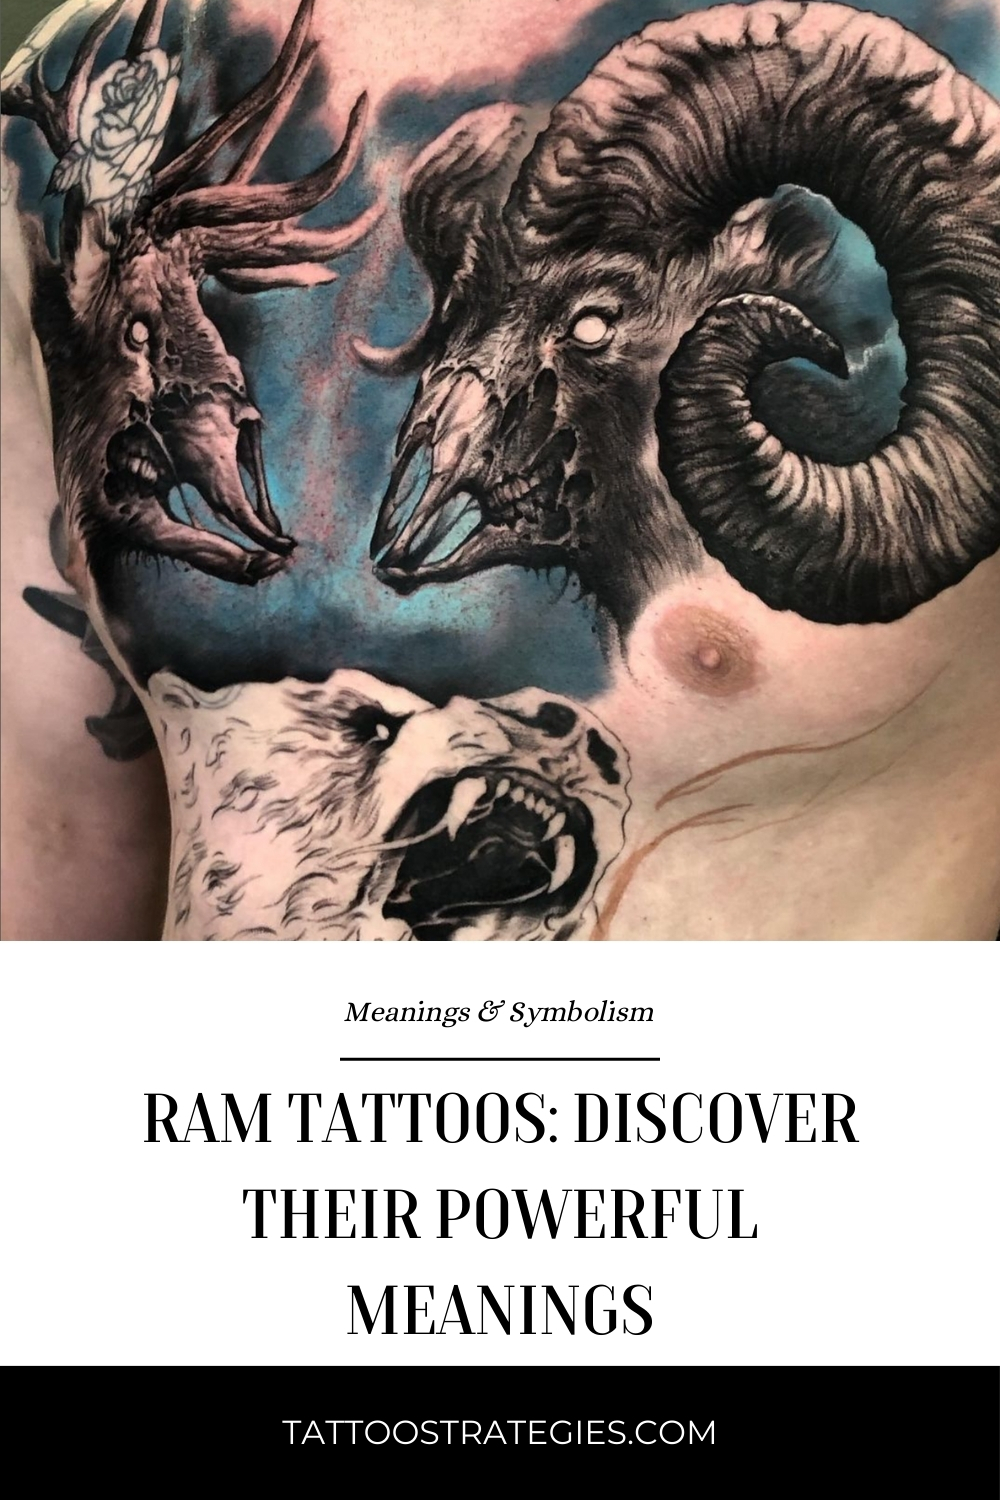 Ram tattoos meaning - Tattoo Strategies